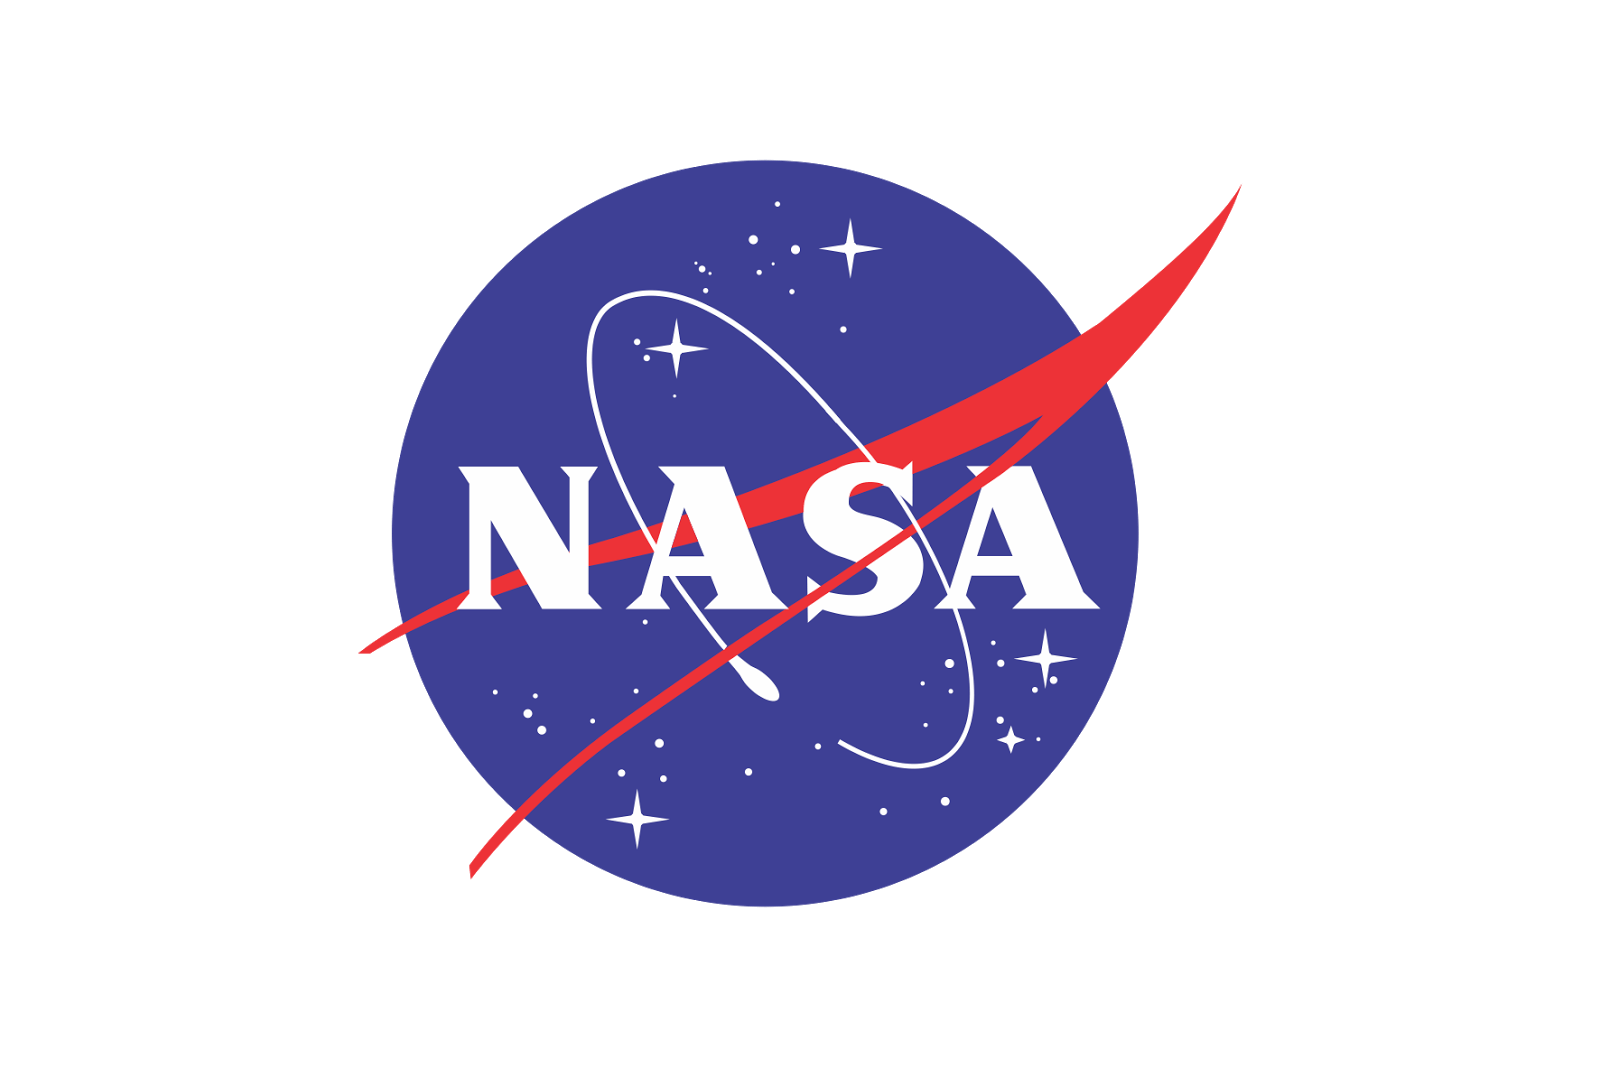 NASA High Resolution Logo - Nasa Black And White Logo Png Image